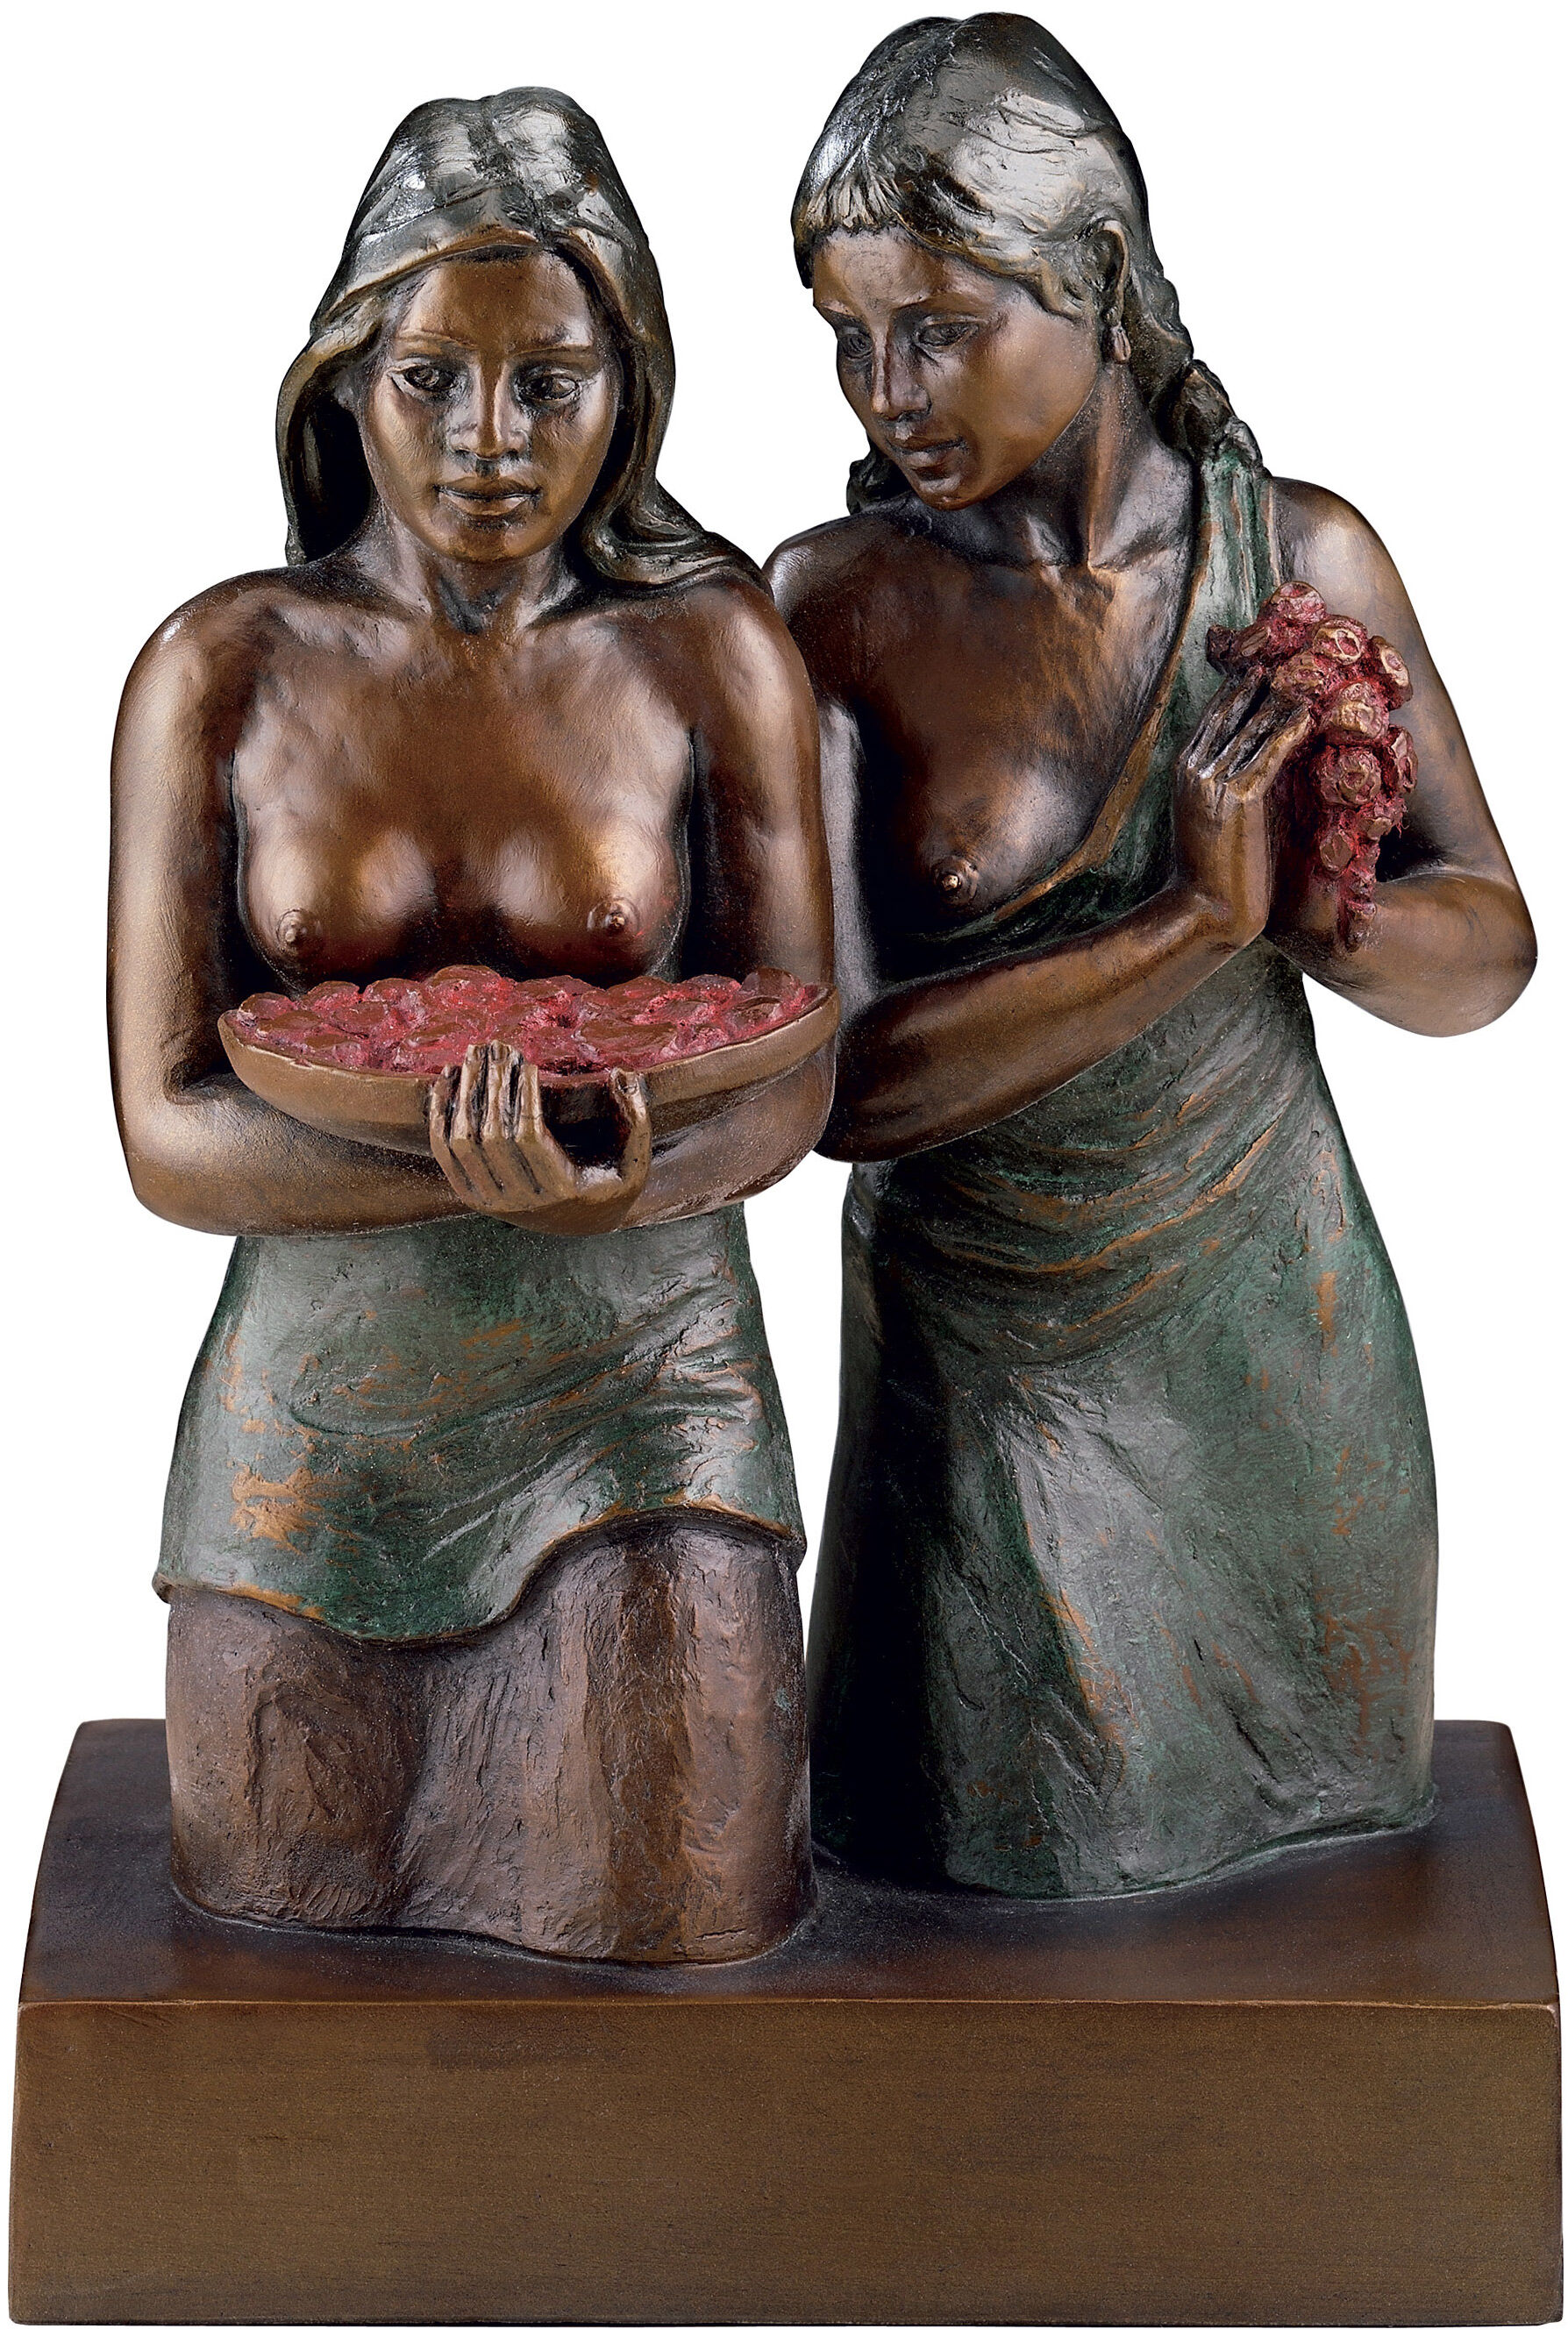 Skulptur "Deux Tahitiennes", bundet bronze von Paul Gauguin